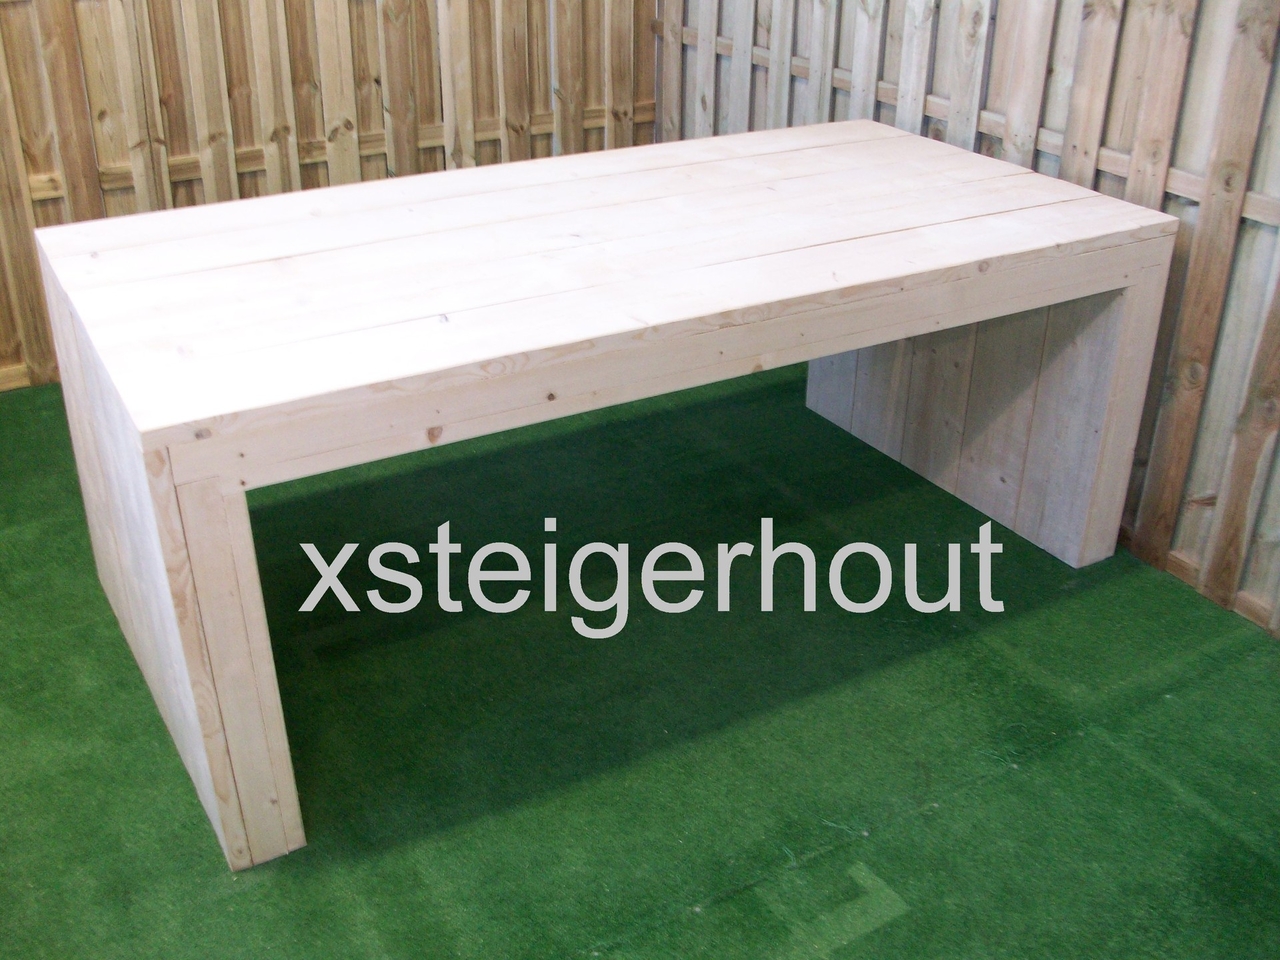 Bezighouden Allemaal sectie Steigerhouten tafel u model bouwpakket - xsteigerhout